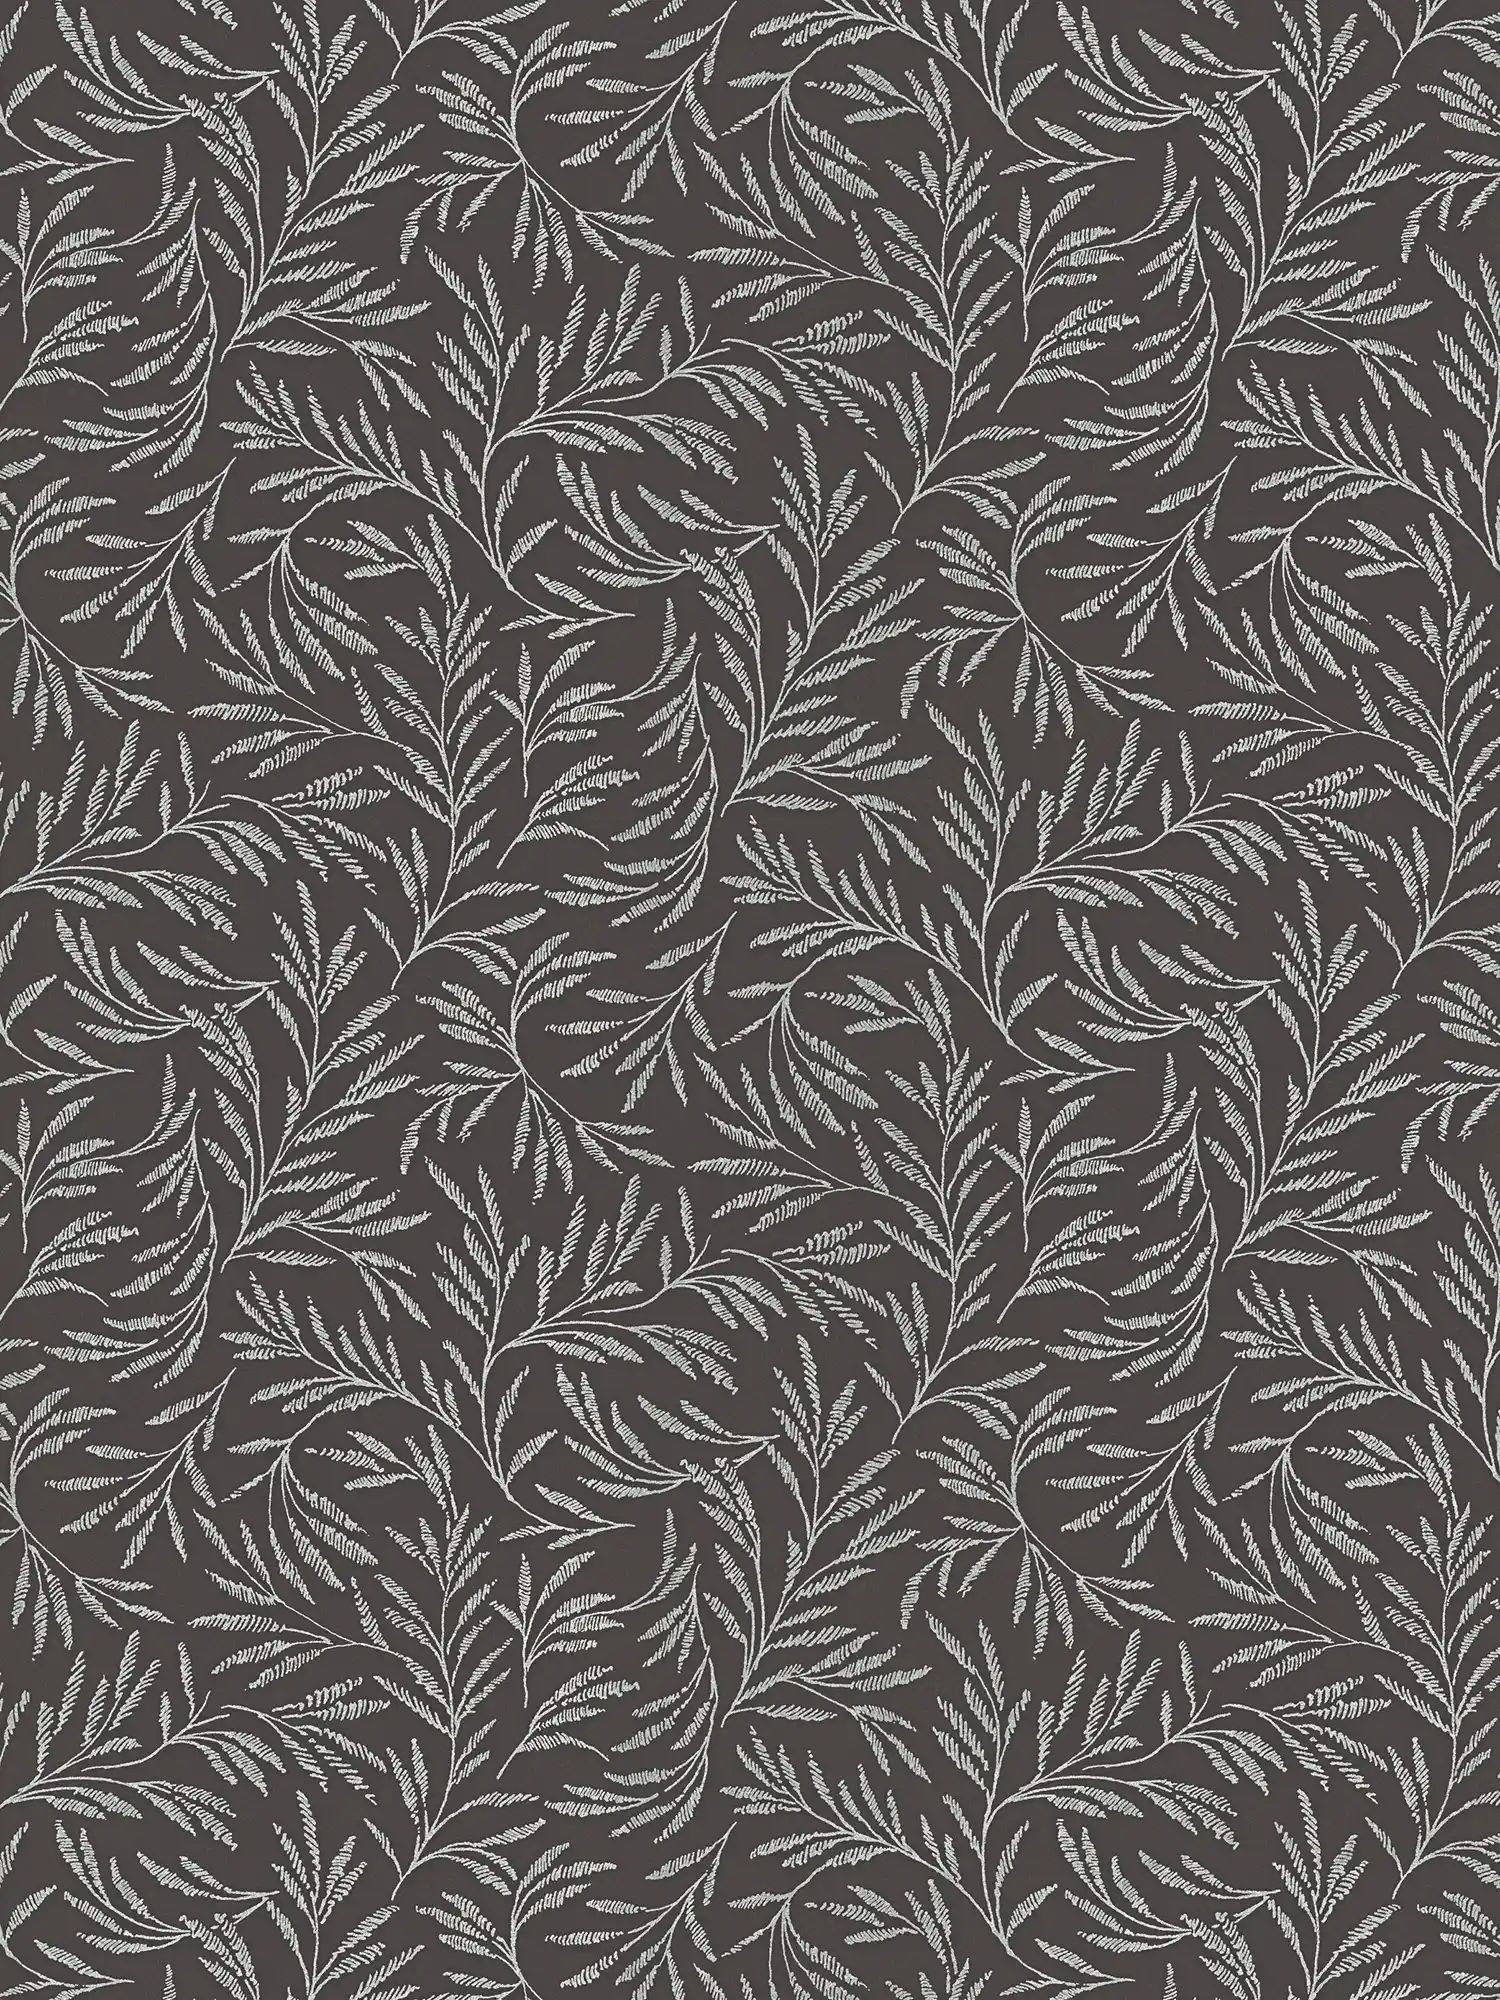 Papel pintado Vlie patrón metálico con zarcillos de hojas - metálico, negro
